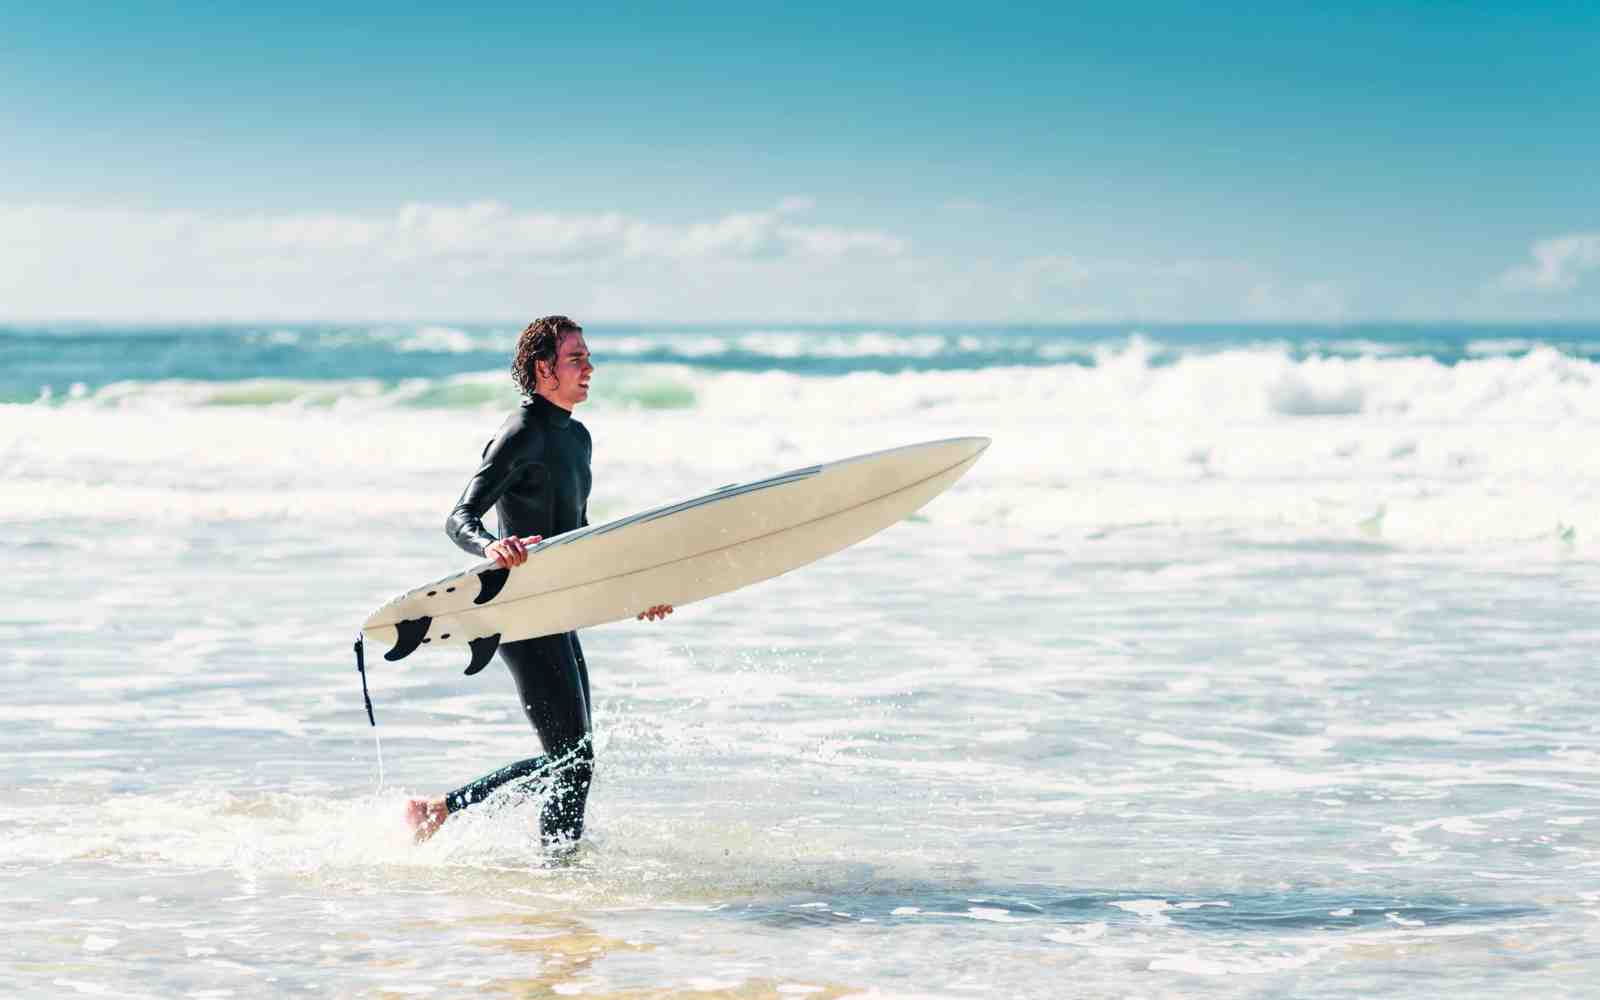 Comment vivre du surf ?